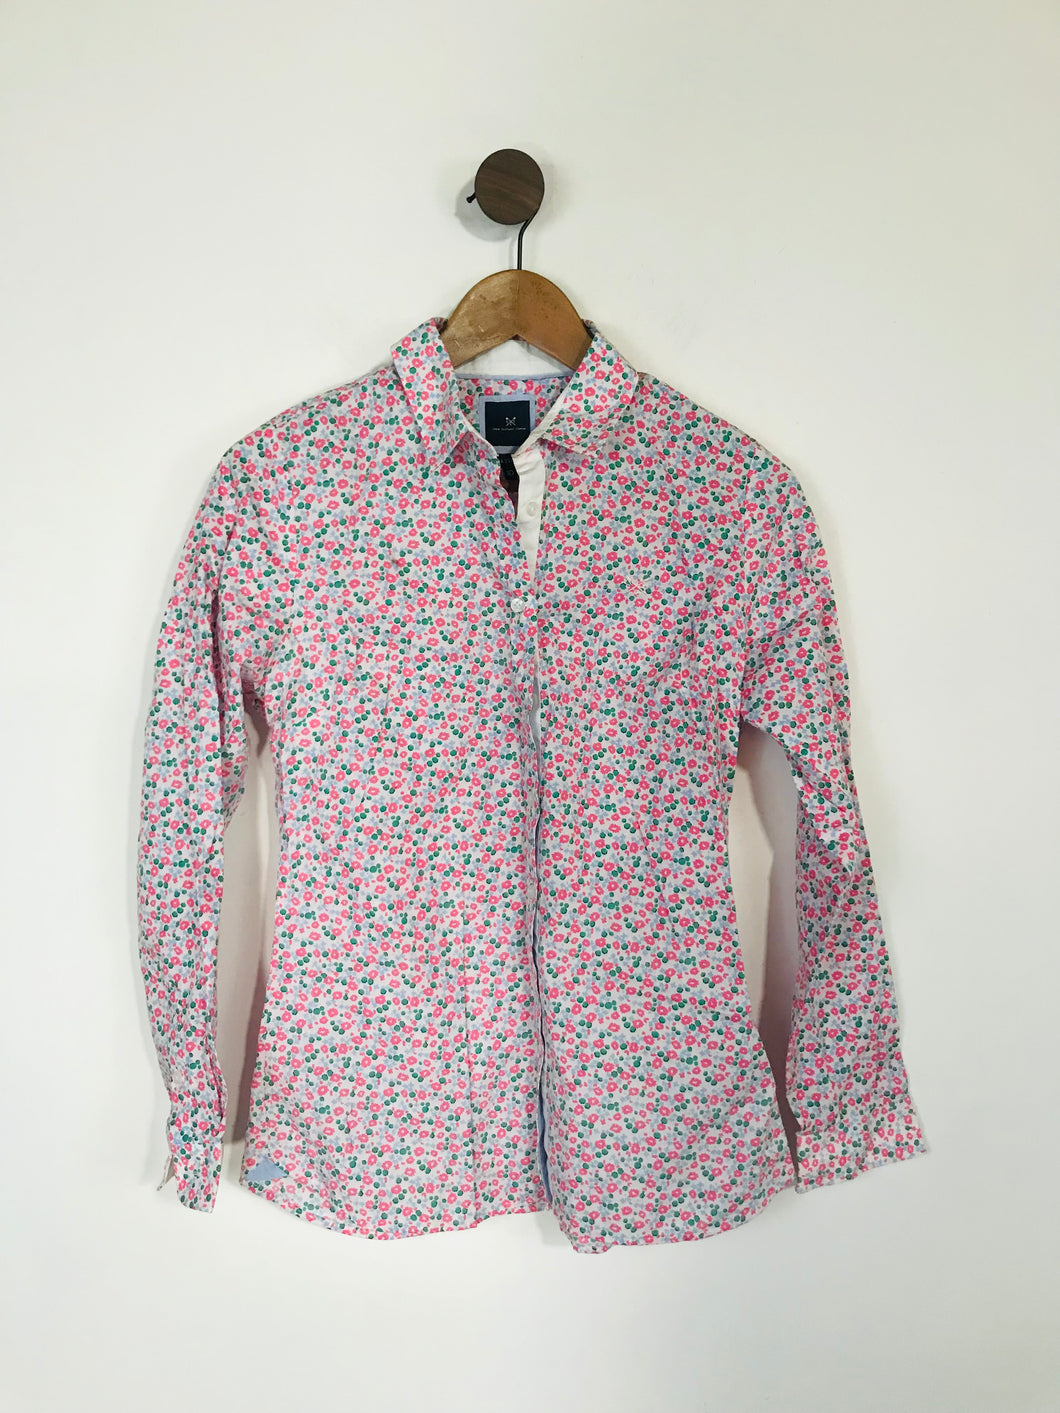 Crew Clothing Women's Cotton Floral Button-Up Shirt | UK10 | Multicolour